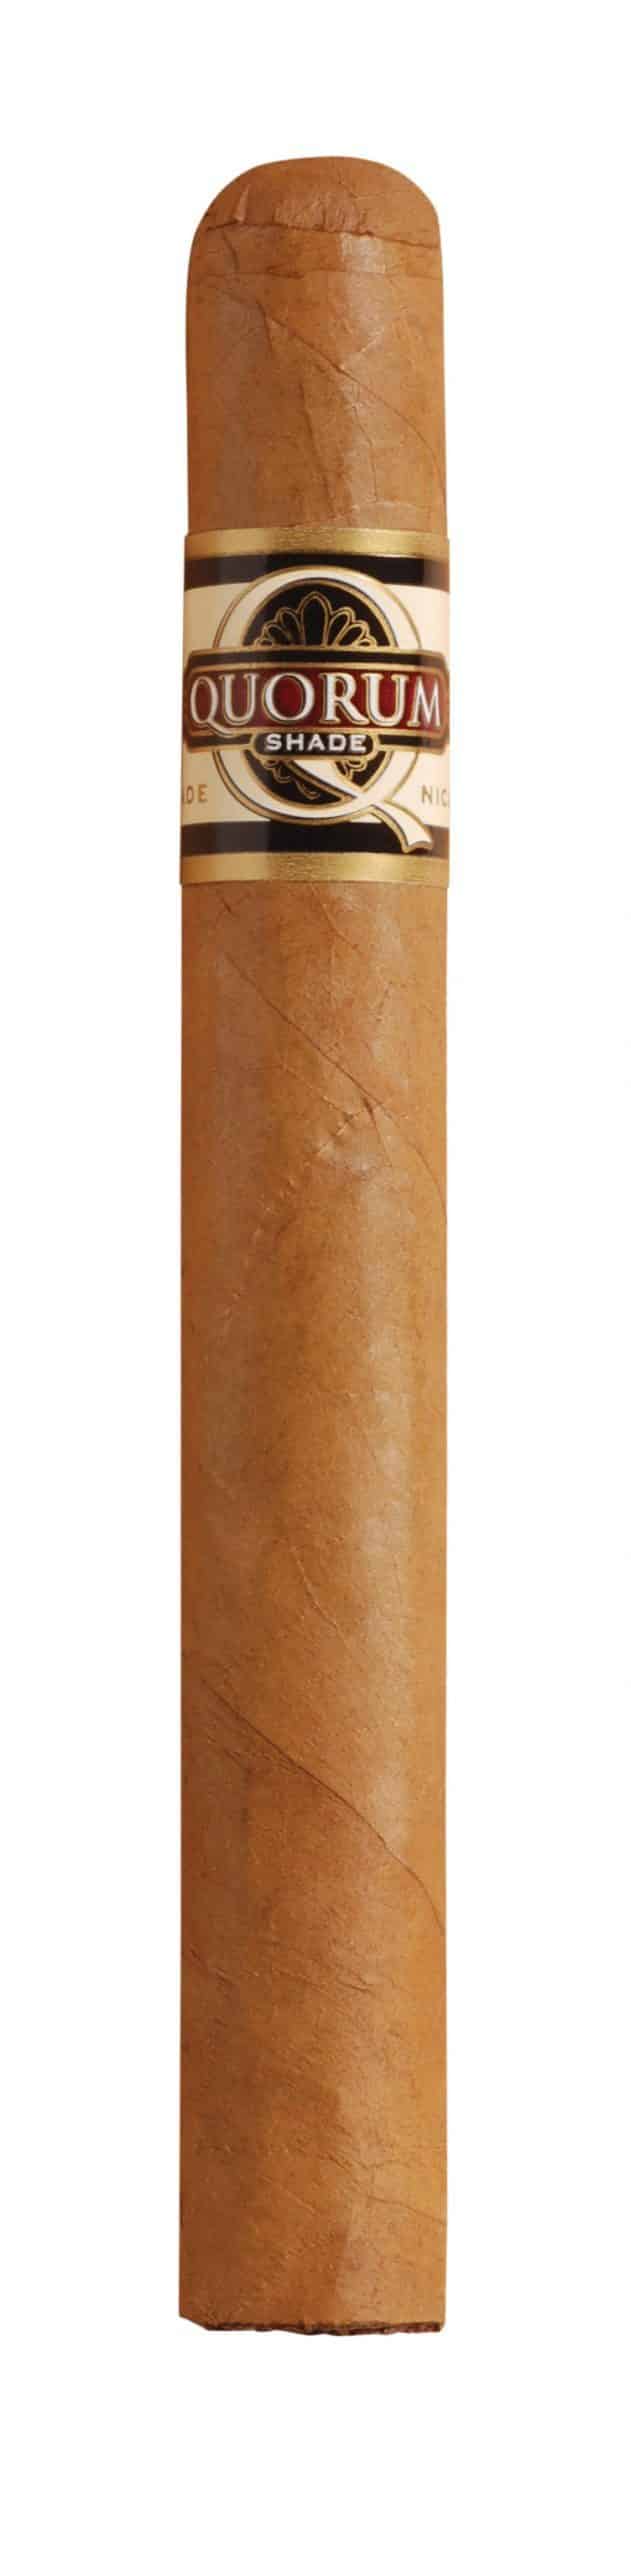 quorum shade corona larga single cigar